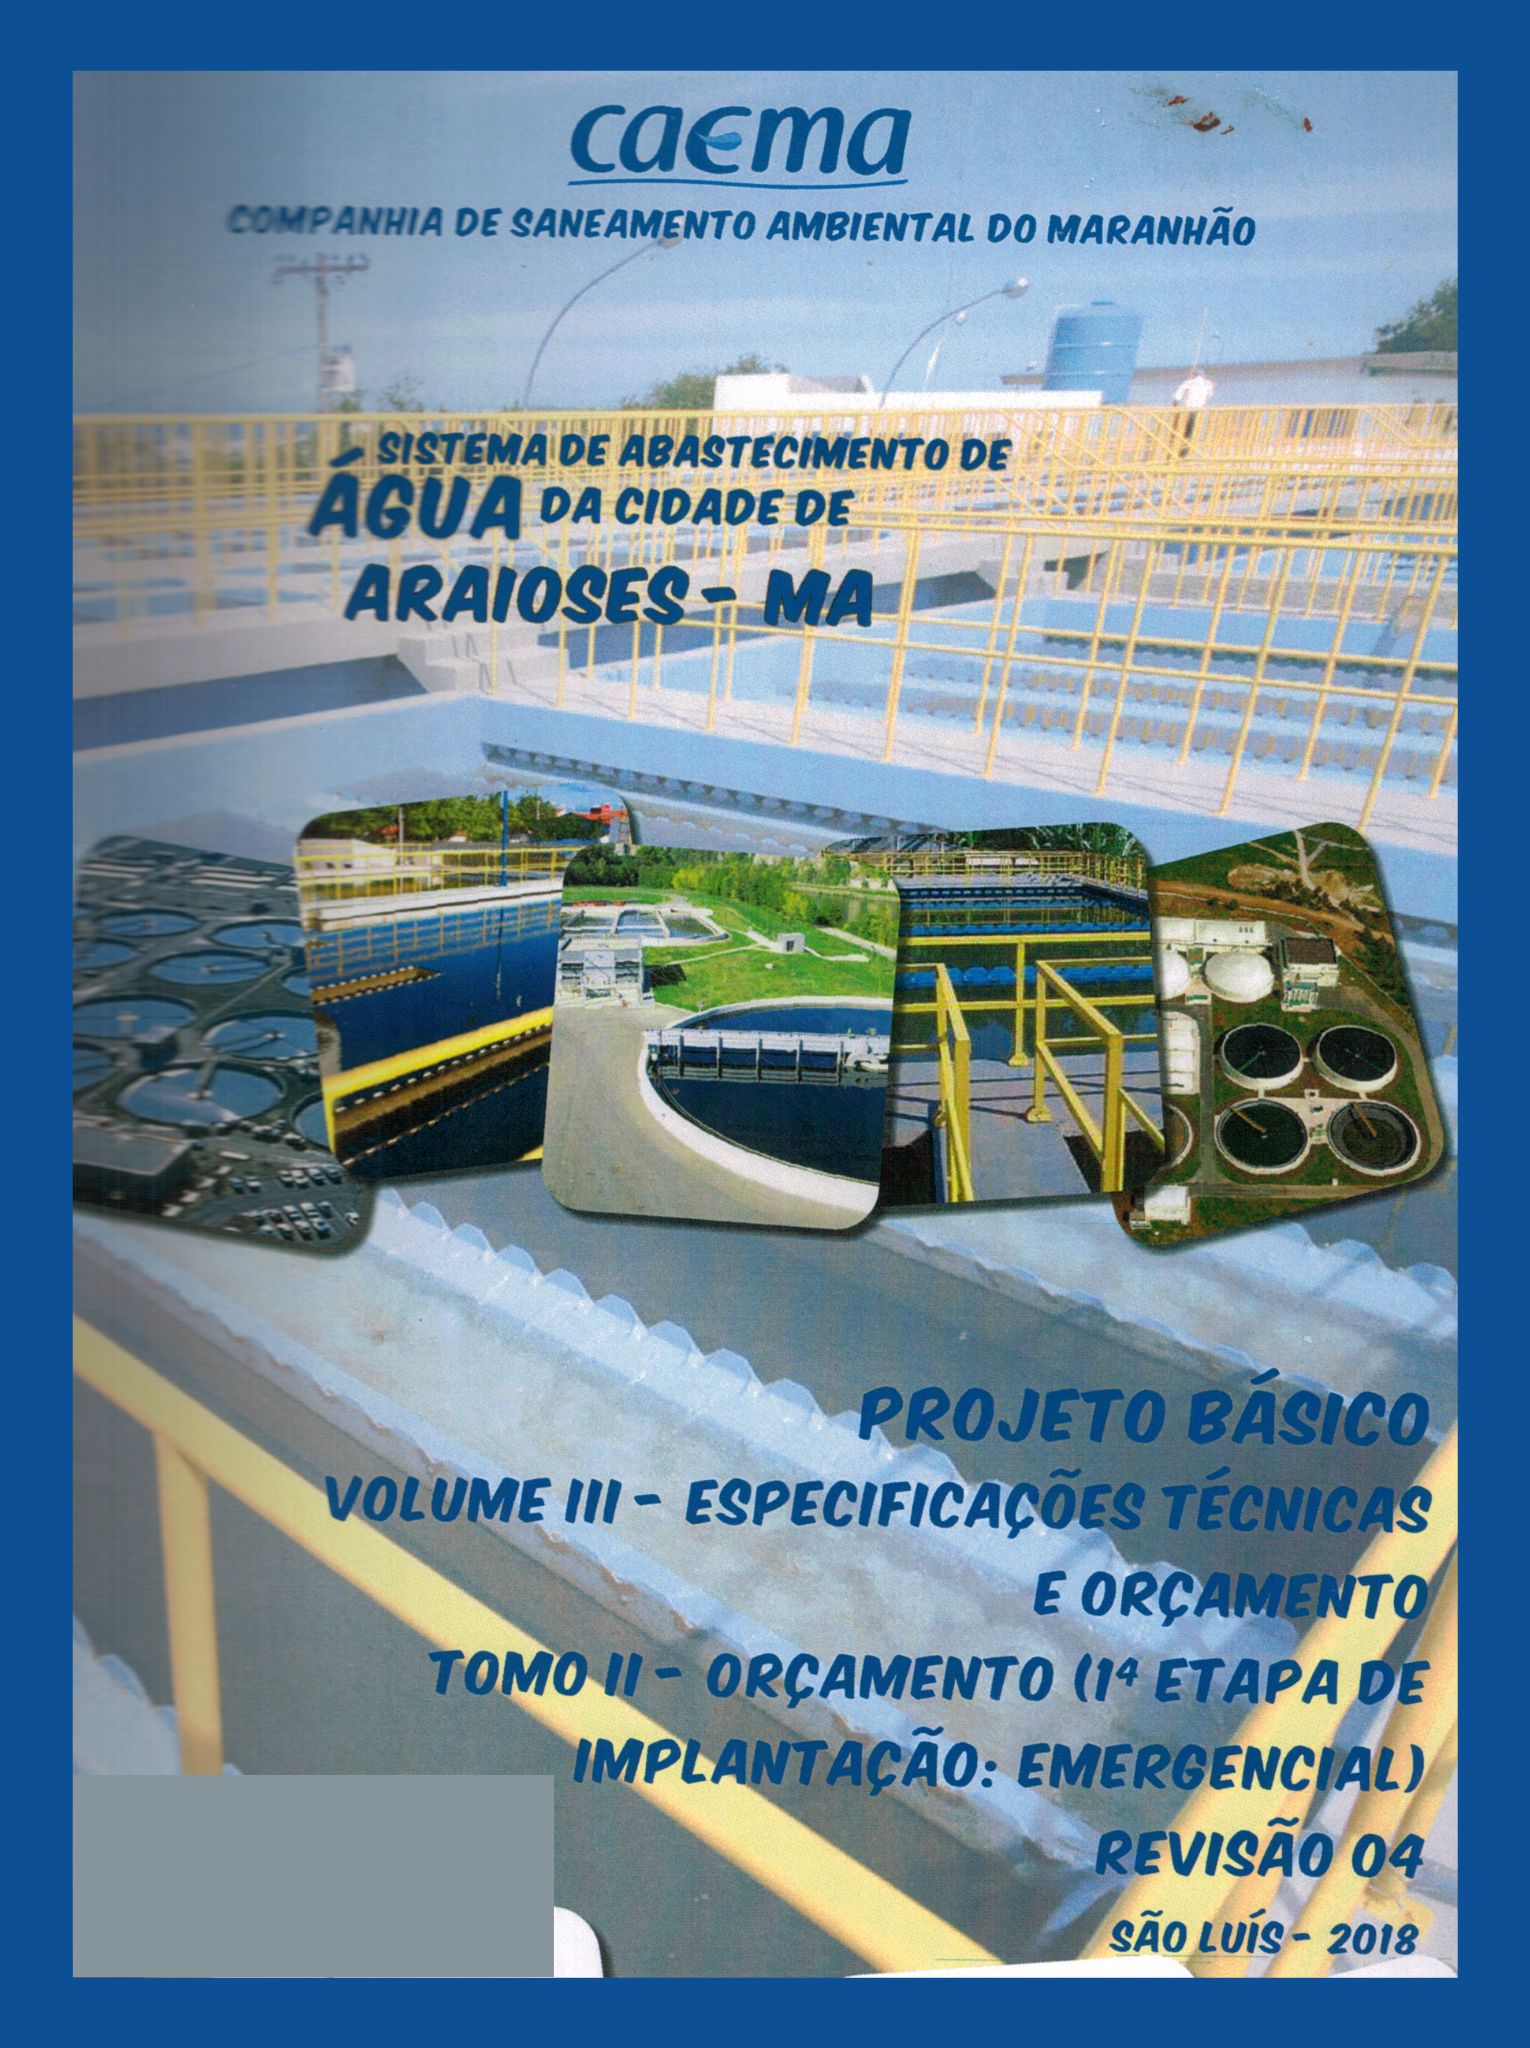 Imagem da capa do Projeto Técnico com informações do título e autoria.